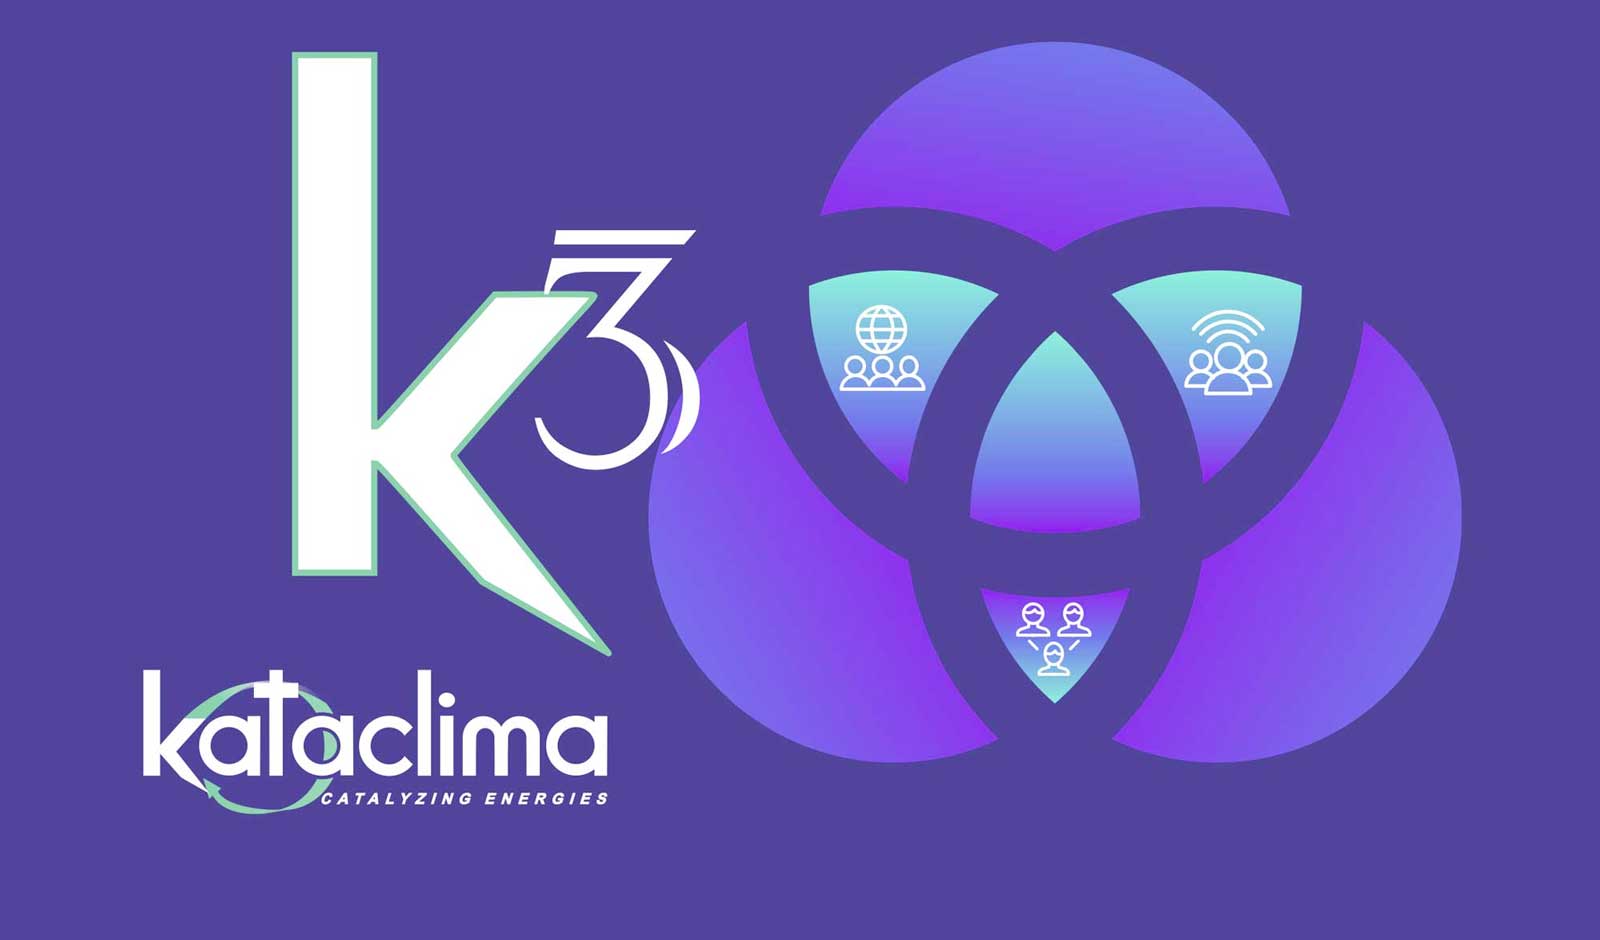 K3 by Kataclima